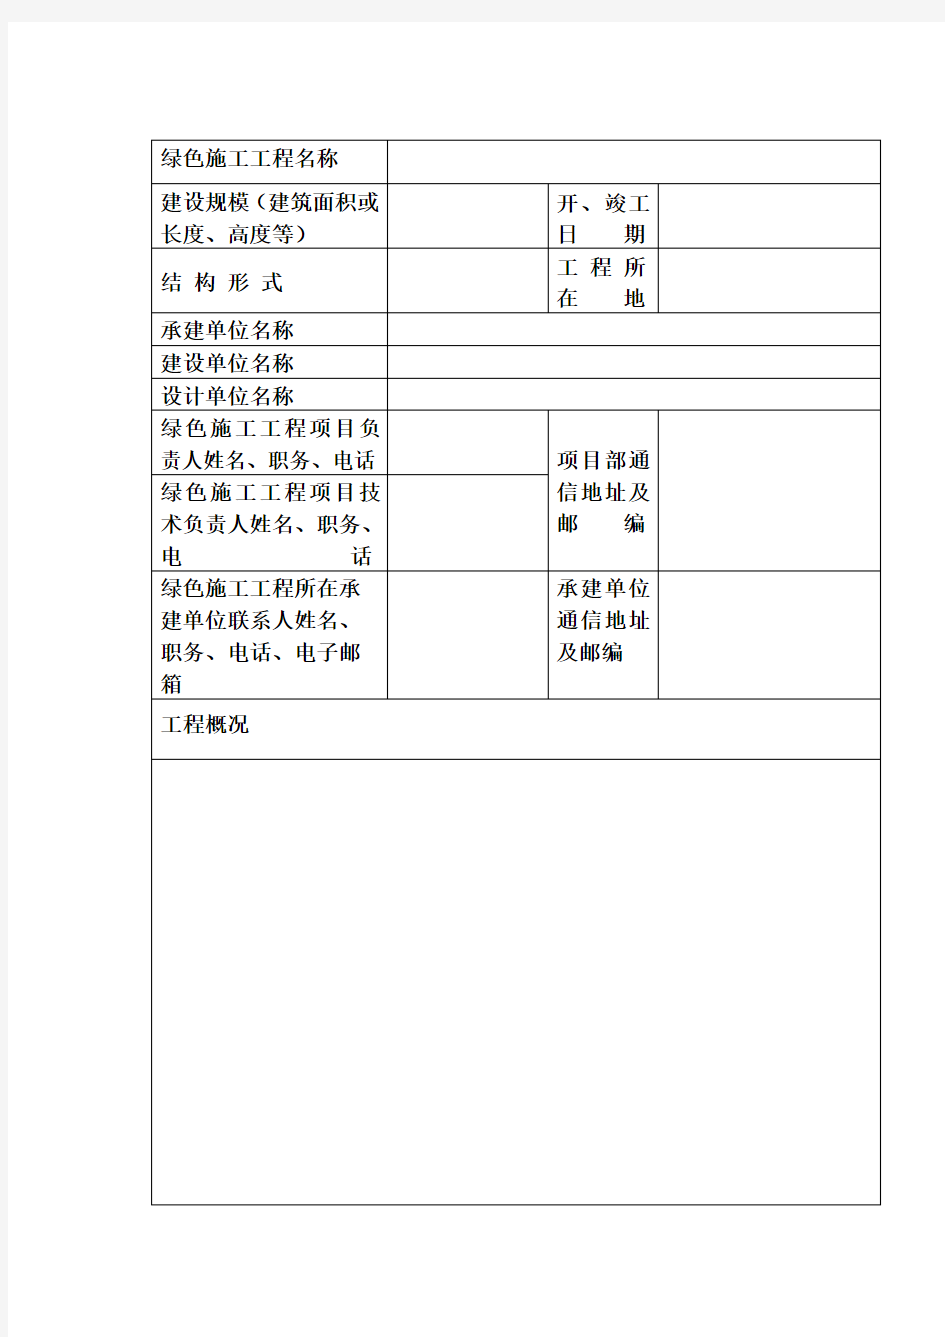 陕西省建筑业绿色施工示范工程验收评审(主体阶段评价)申请表【模板】